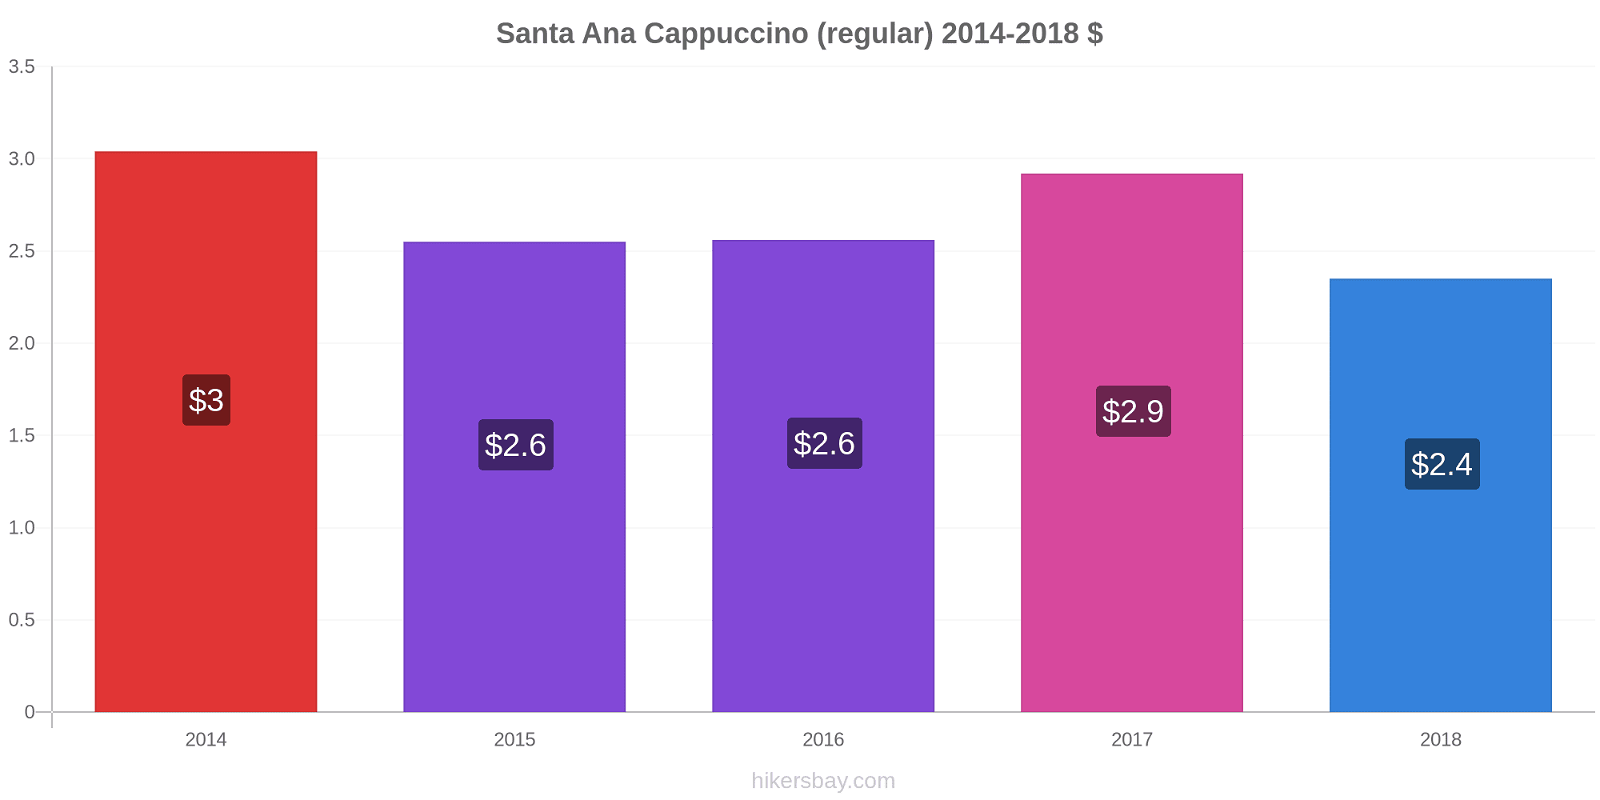 Santa Ana variação de preço Capuccino (regular) hikersbay.com